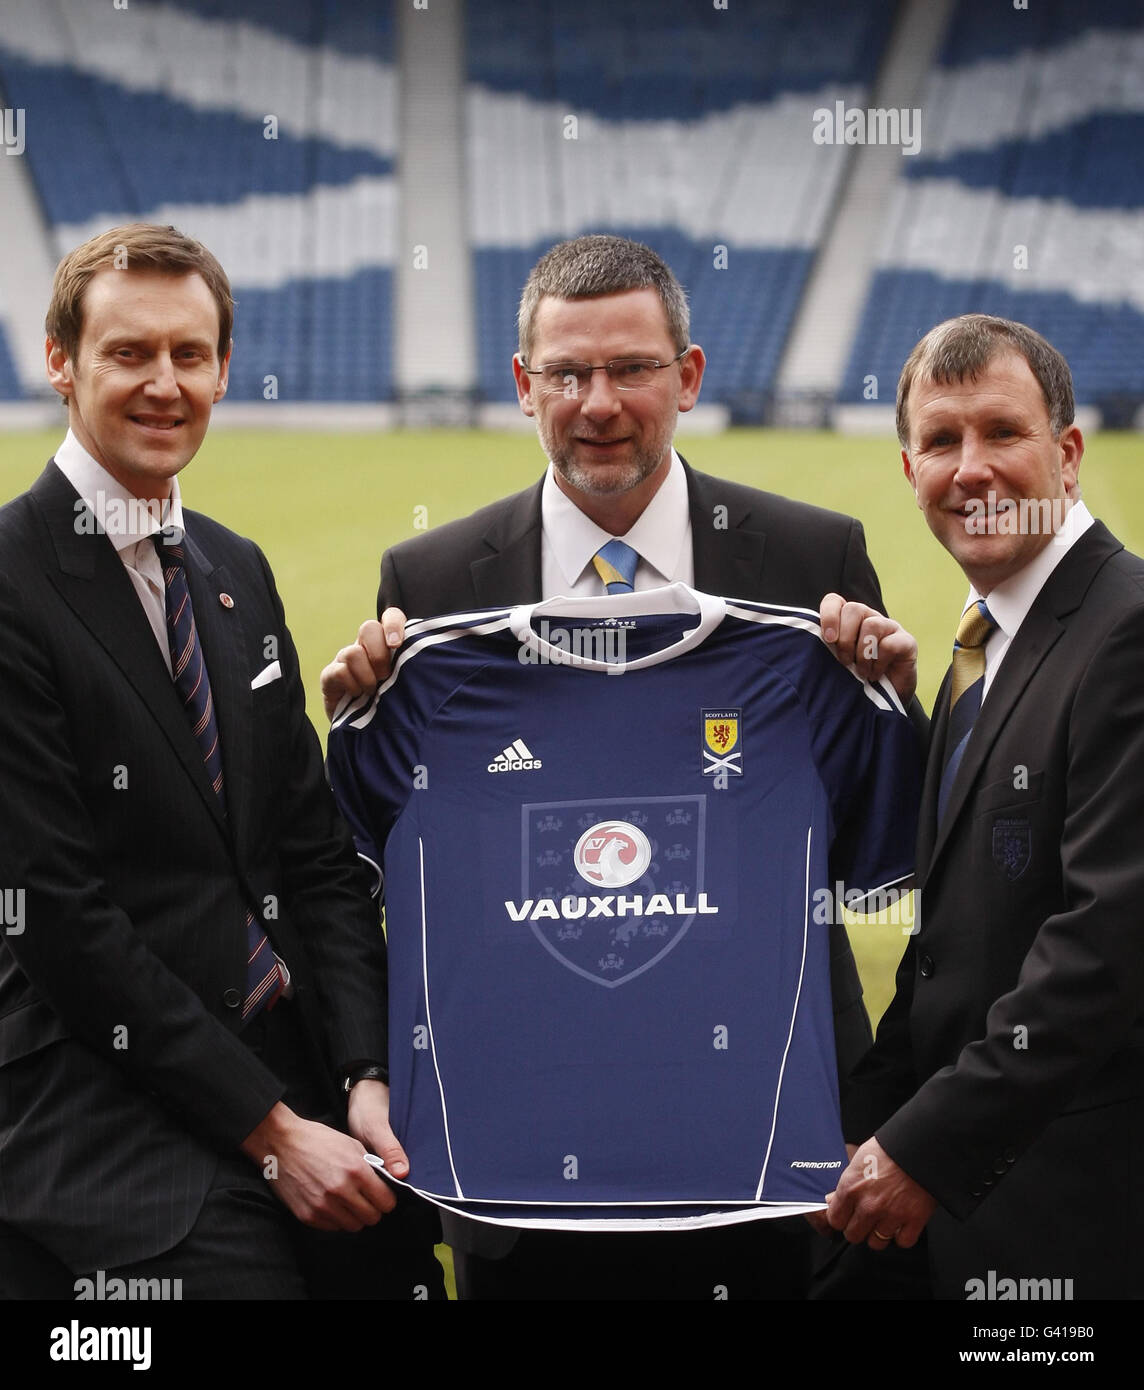 Scotland, il coach del team nazionale Craig Levein (centro) con Stewart Regan (a destra) e l'amministratore delegato di Vauxhall, Duncan Aldred (a sinistra), durante una fotocellula, annuncerà Vauxhall Motors come nuovo sponsor del team nazionale presso Hampden Park, Glasgow Foto Stock